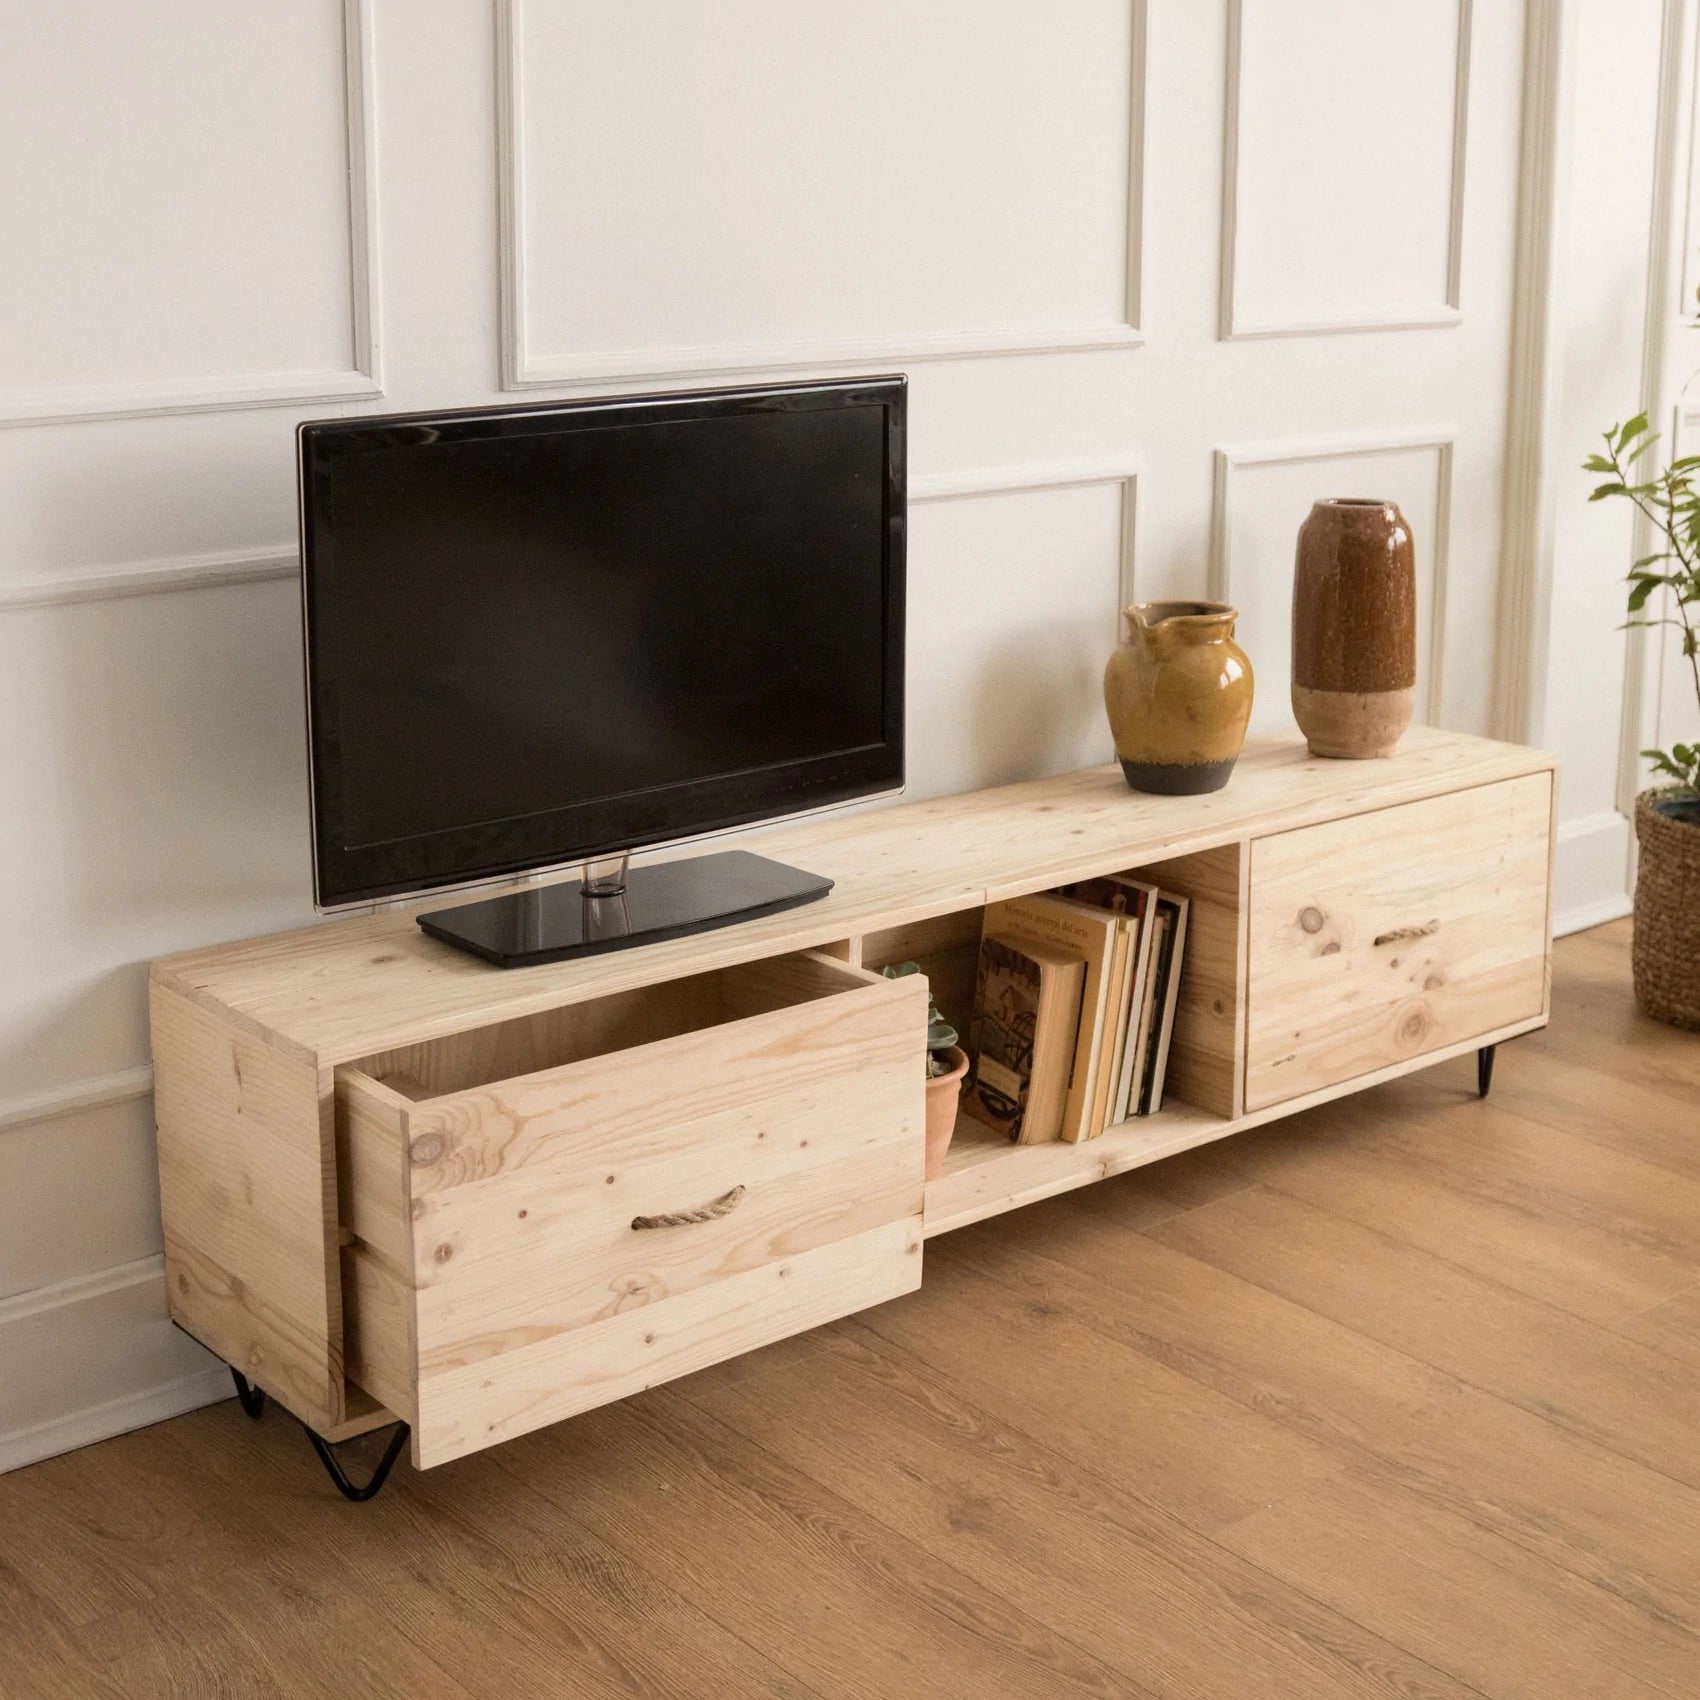 Mueble de TV de madera sostenible con espacio de almacenamiento, ideal para salones pequeños